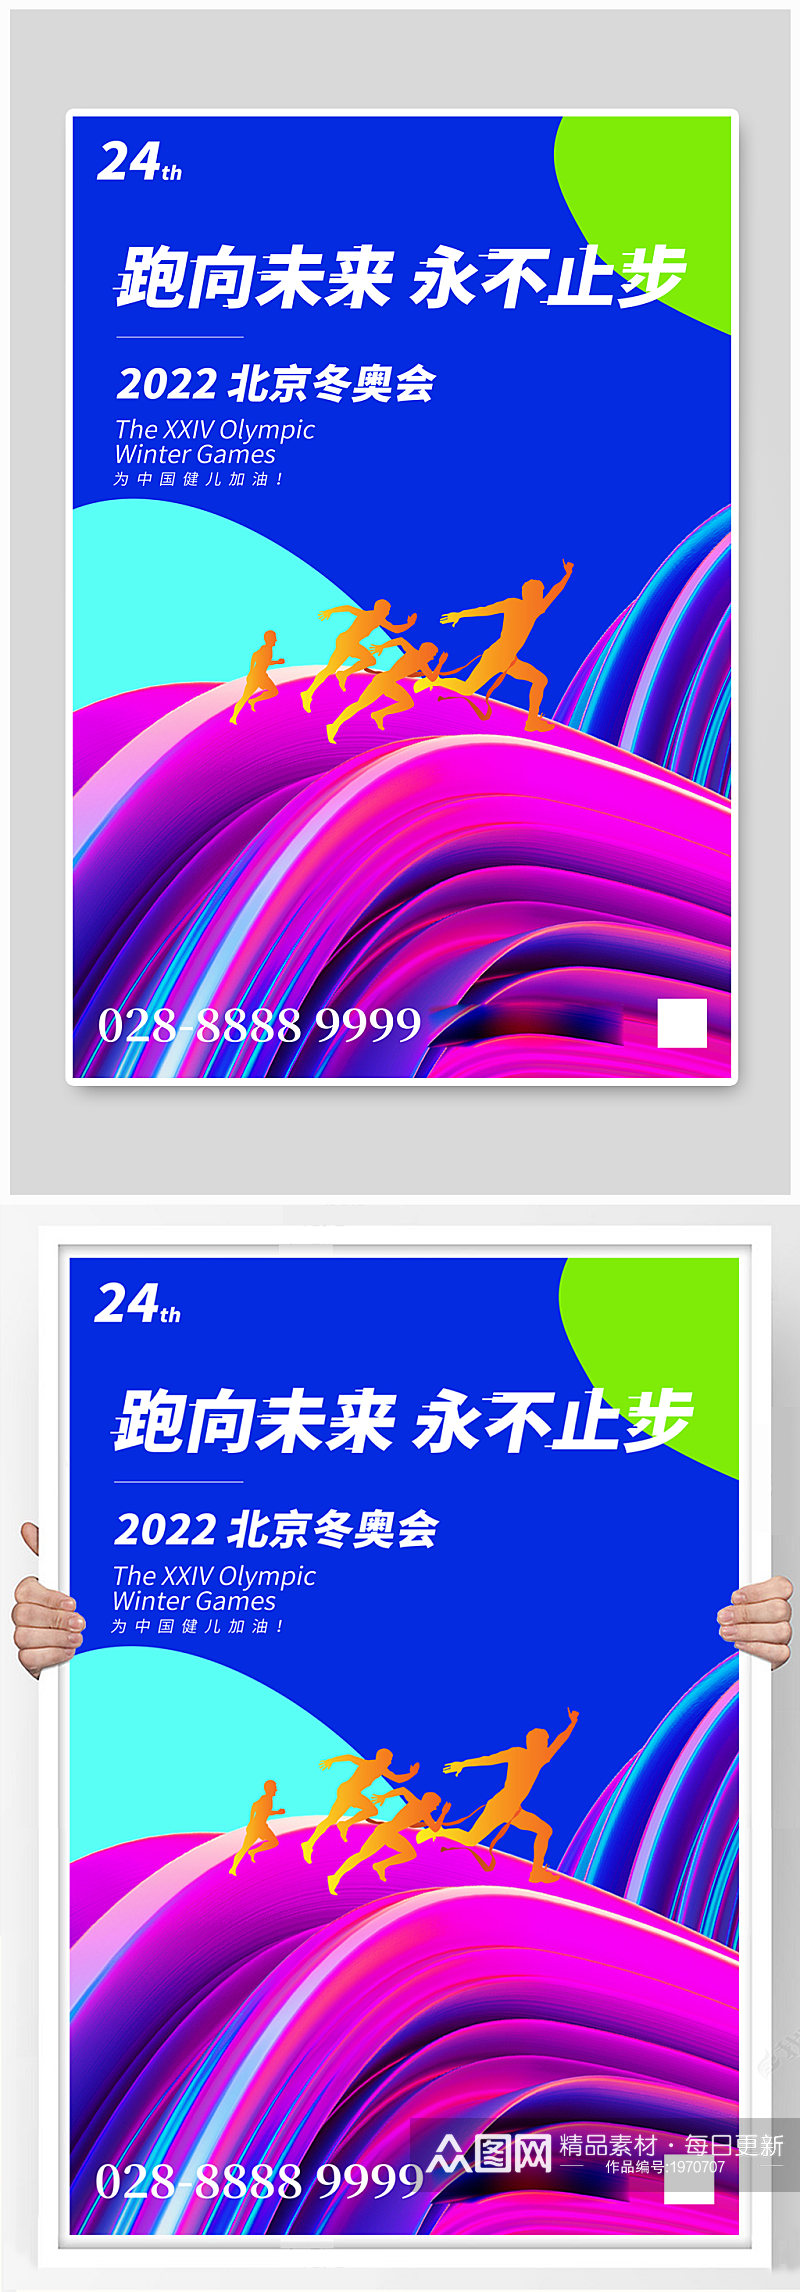 2022北京冬奥会跑步剪影蓝色渐变海报素材